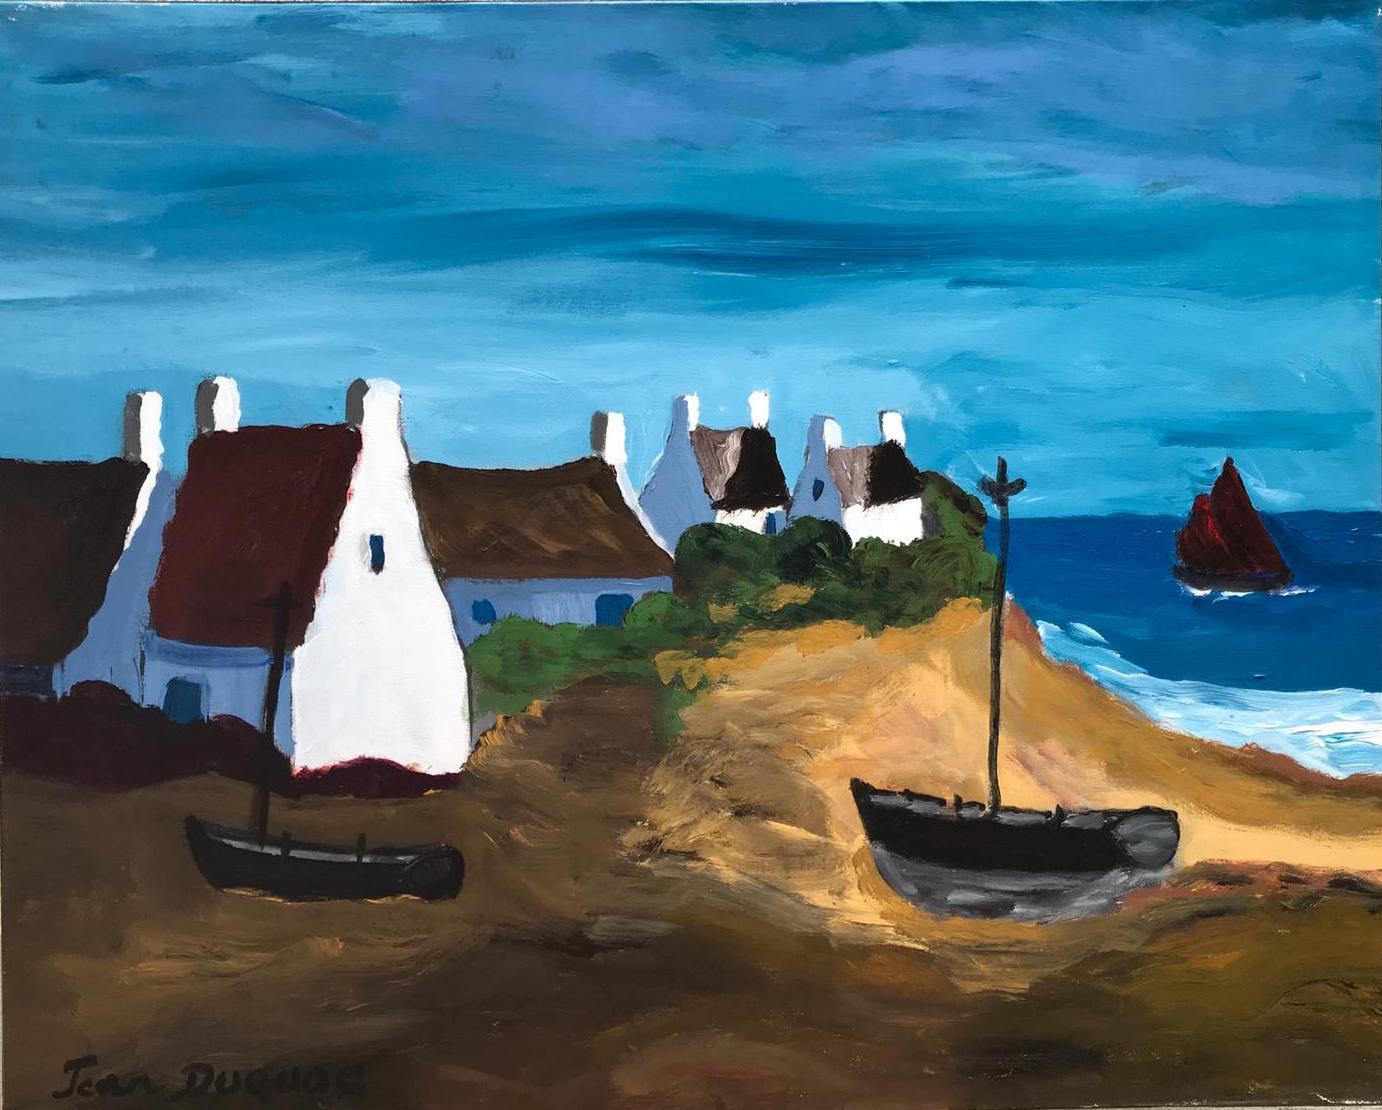 Acrylique sur toile

Jean Duquoc est un artiste français né en 1937 qui vit et travaille à Belz, en Bretagne. Dans son œuvre, on peut voir l'habileté avec laquelle il utilise la couleur, allant directement à l'essentiel, dans la force de l'intensité